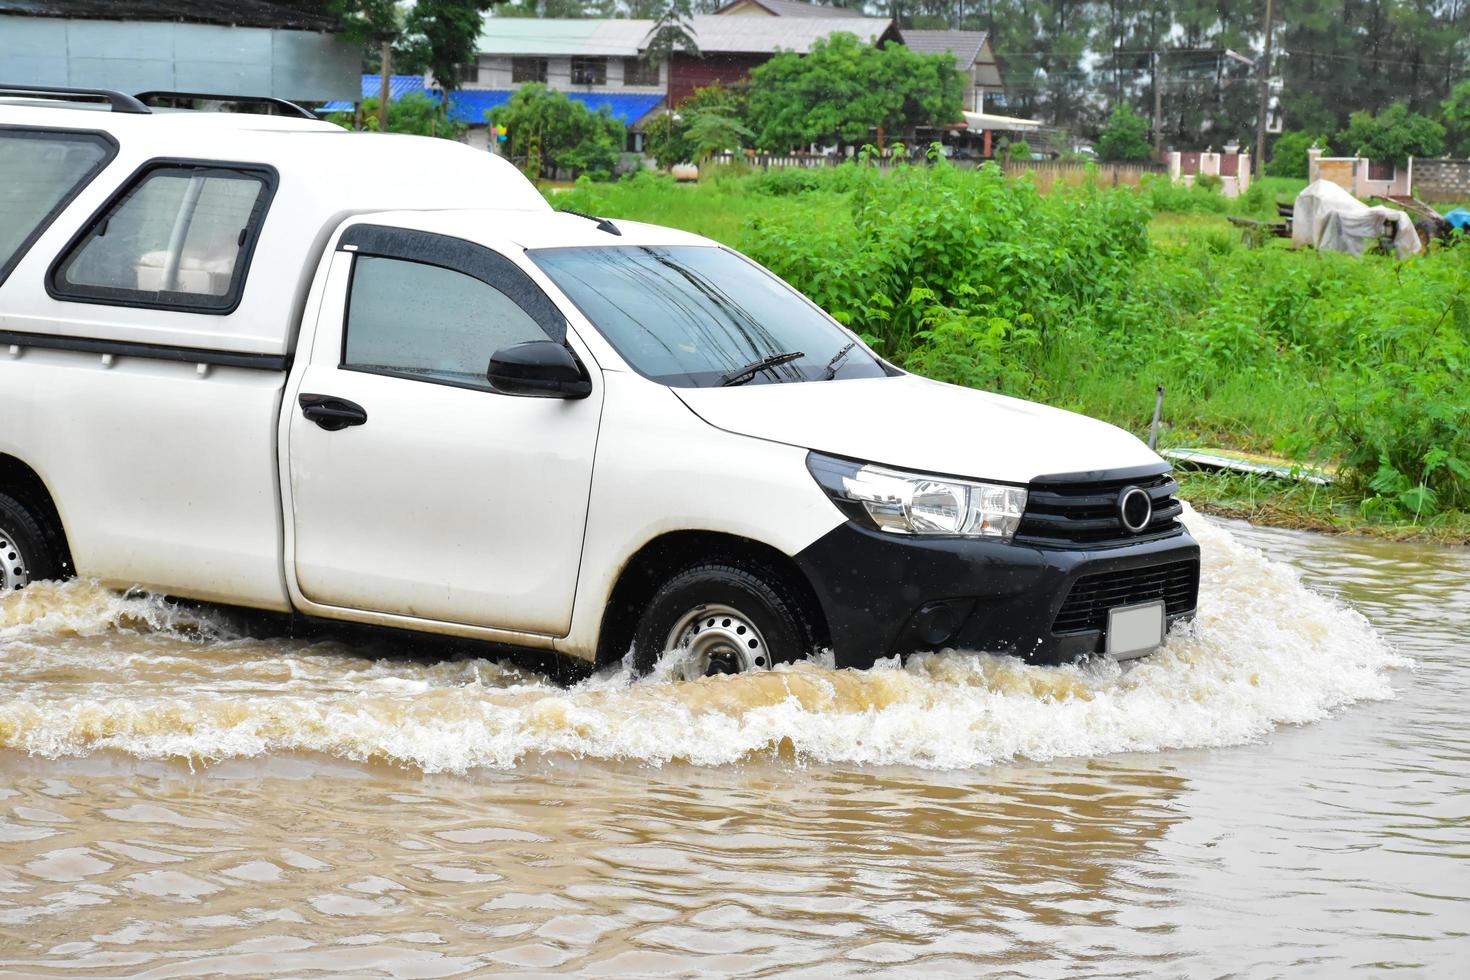 camioneta y vehículo en aguas de inundación, seguro de automóvil y concepto de situación peligrosa. foto